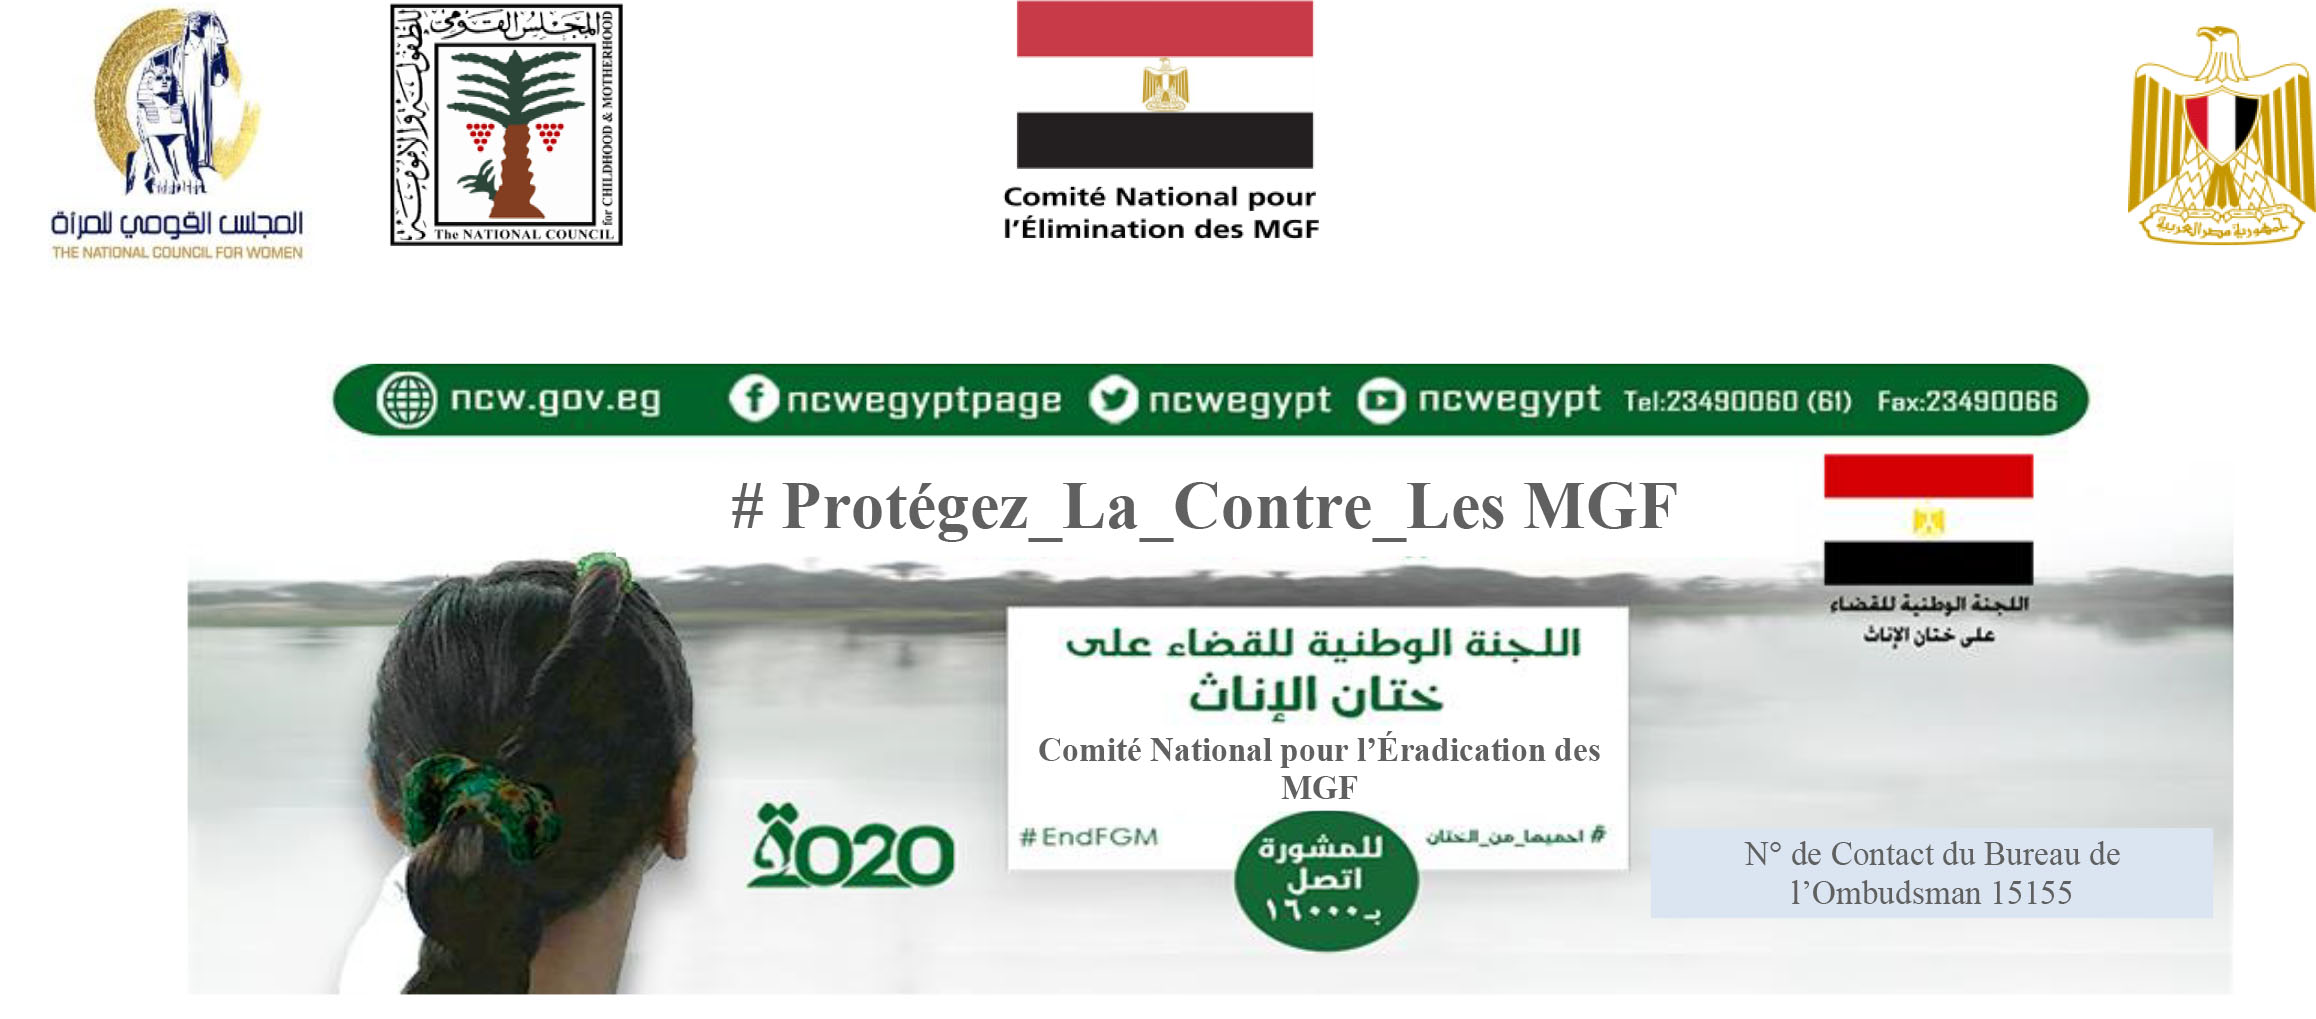 Les efforts nationaux de l'Égypte pour éradiquer le crime des MGF Par : Le Comité National pour l’Élimination des MGF en Égypte 